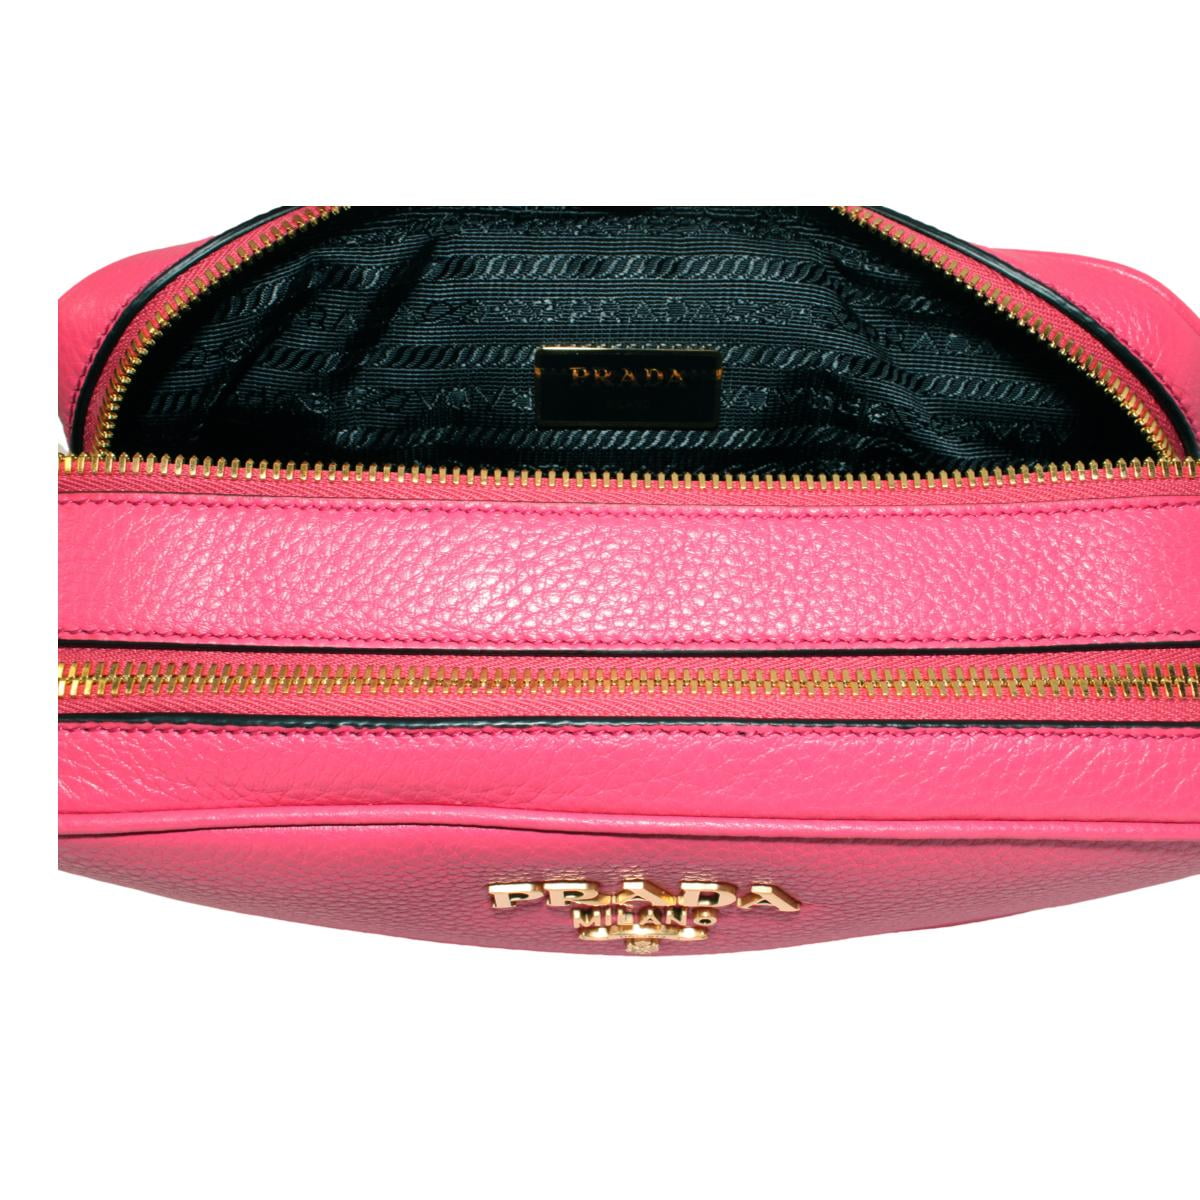 Prada Argilla Grey Vitello Phenix Leather Double Zip Cross Body Bag 1B –  ZAK BAGS ©️